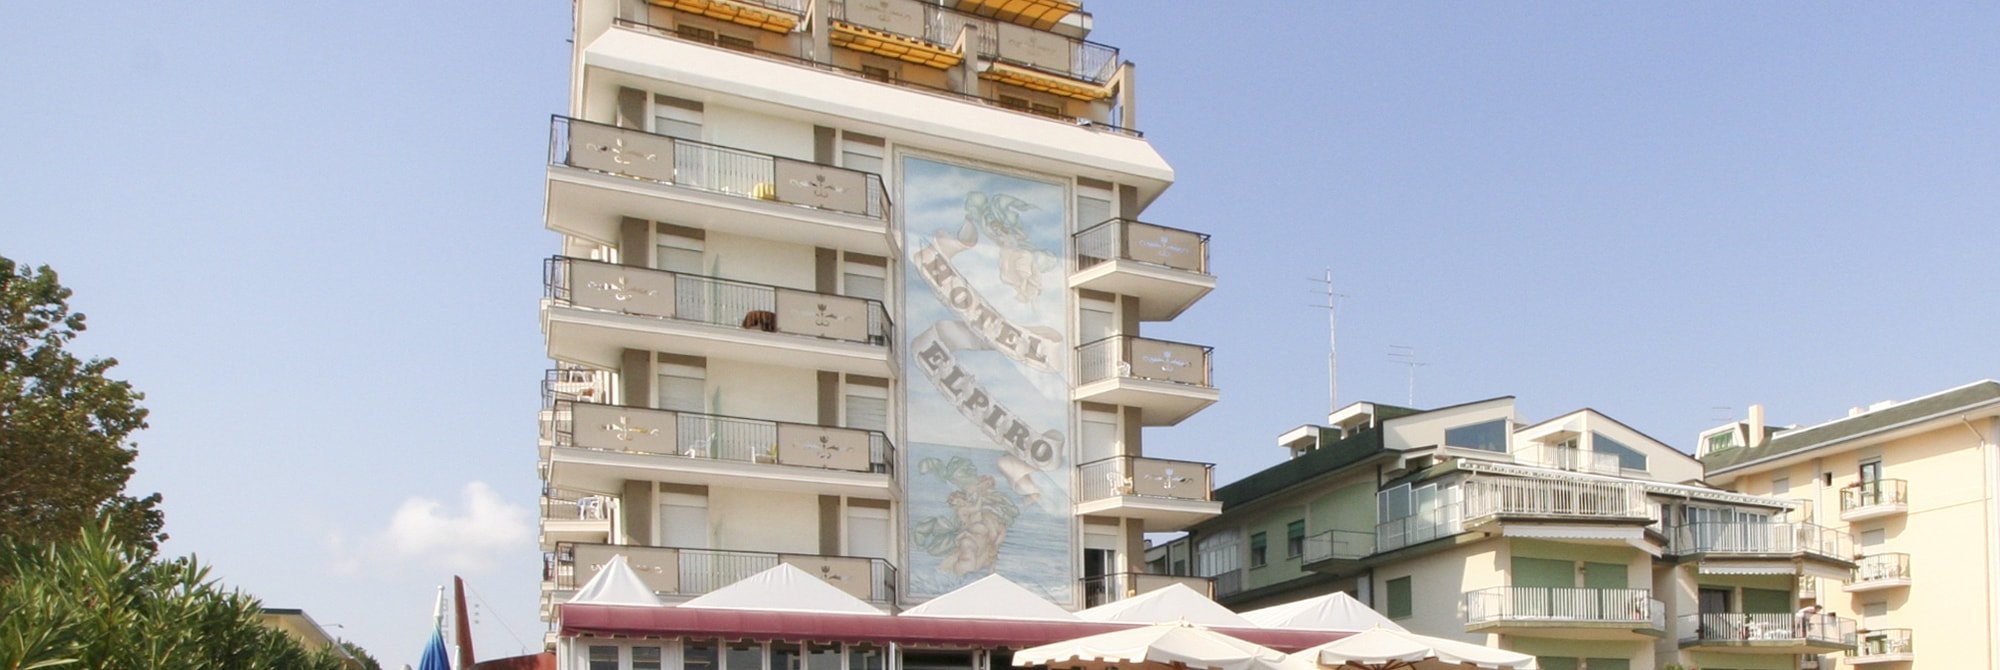 Hotel Elpiro